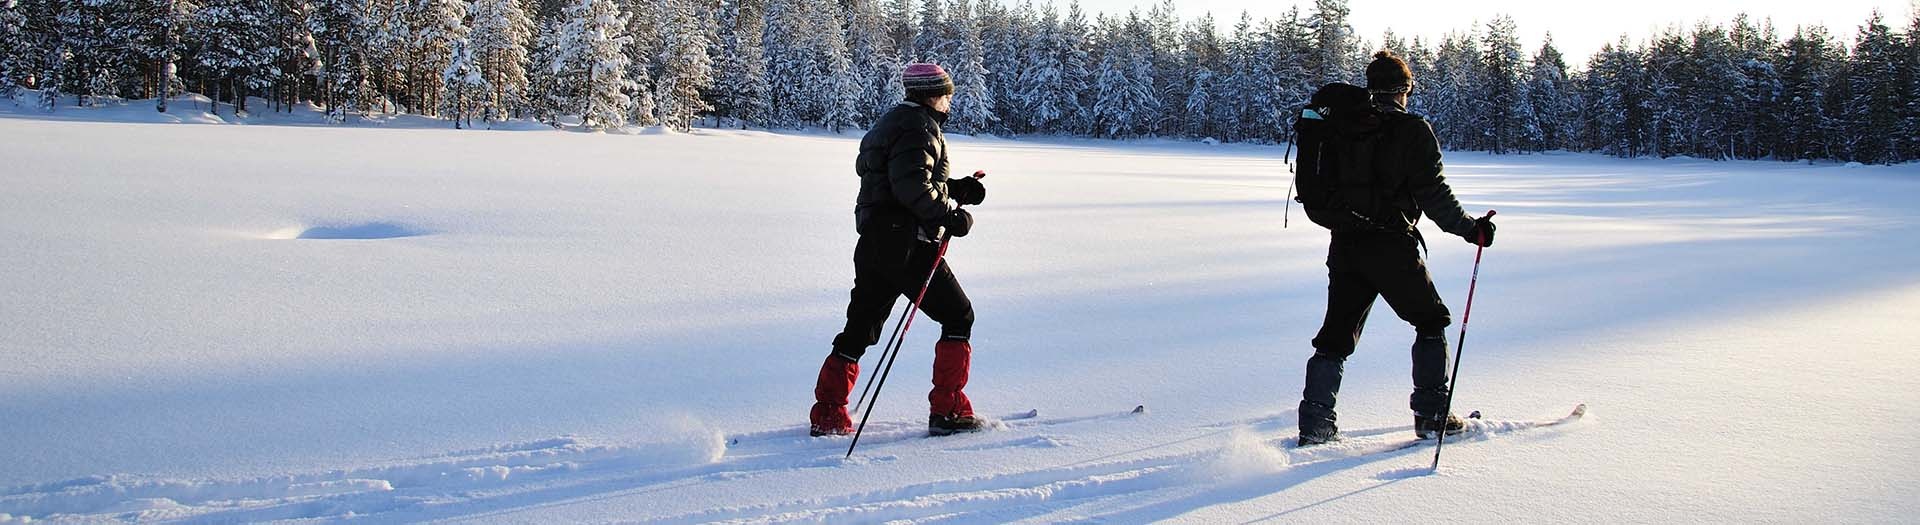 Ski nordique dans la région du Kainuu